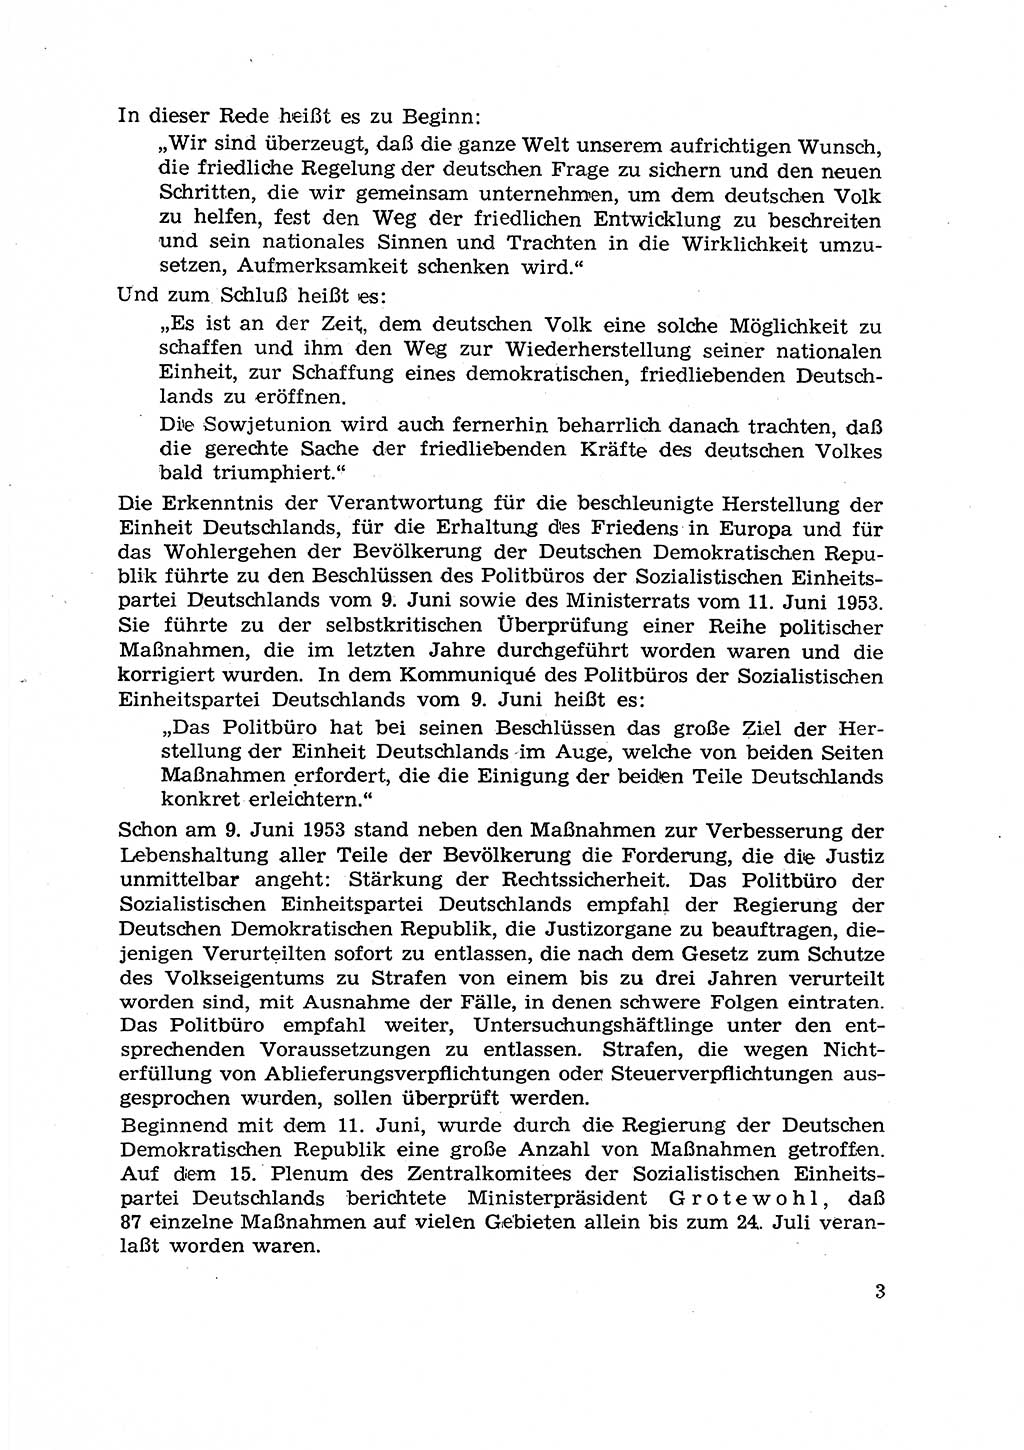 Hauptaufgaben der Justiz [Deutsche Demokratische Republik (DDR)] bei der Durchführung des neuen Kurses 1953, Seite 3 (Hpt.-Aufg. J. DDR 1953, S. 3)